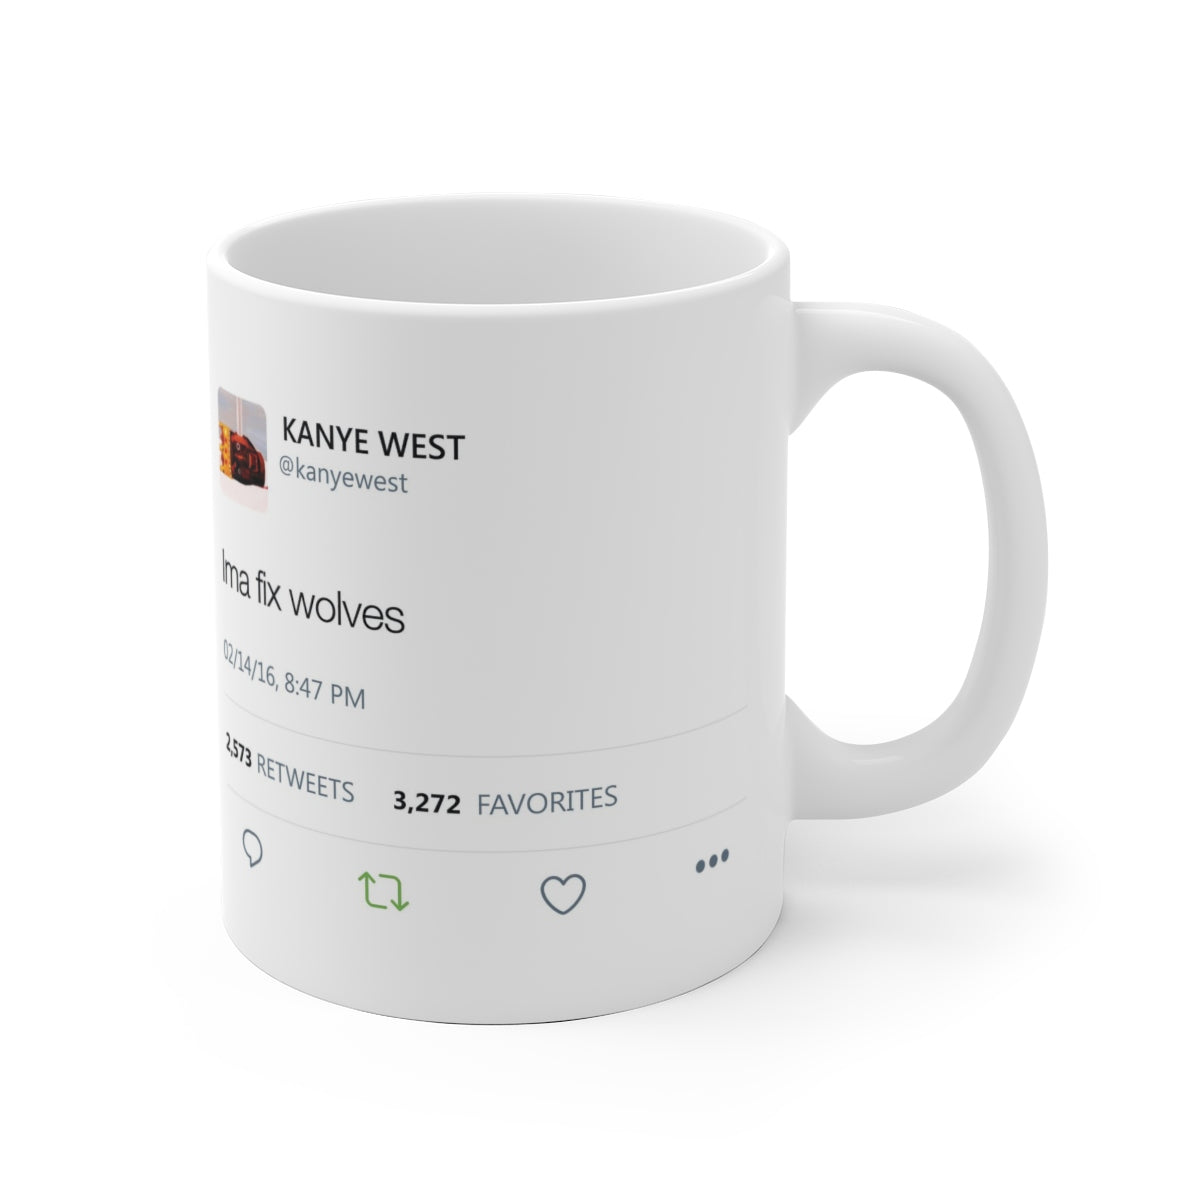 Ima fix wolves - Kanye West Tweet Mug-Archethype